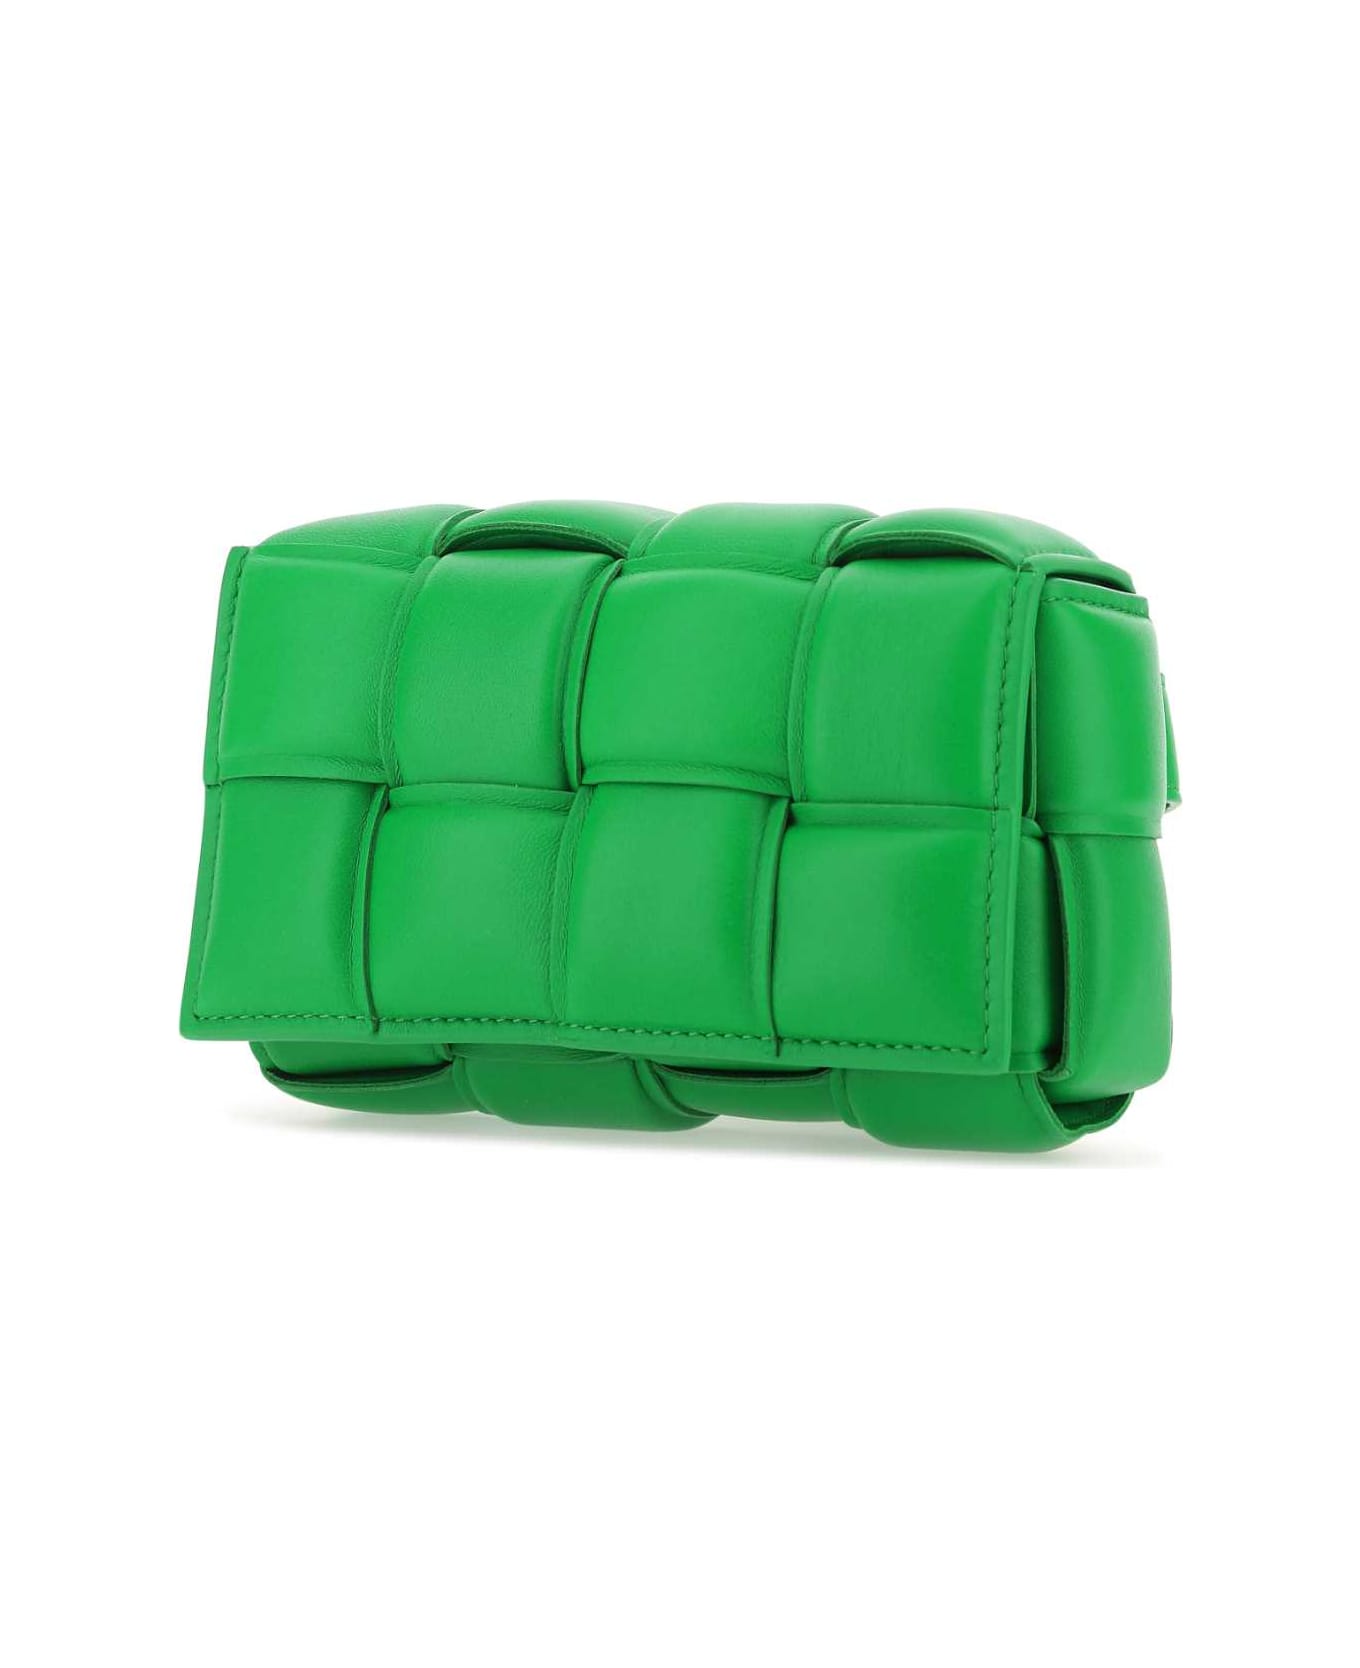 Bottega Veneta Grass Green Nappa Leather Padded Cassette Belt Bag - 3724 バックパック